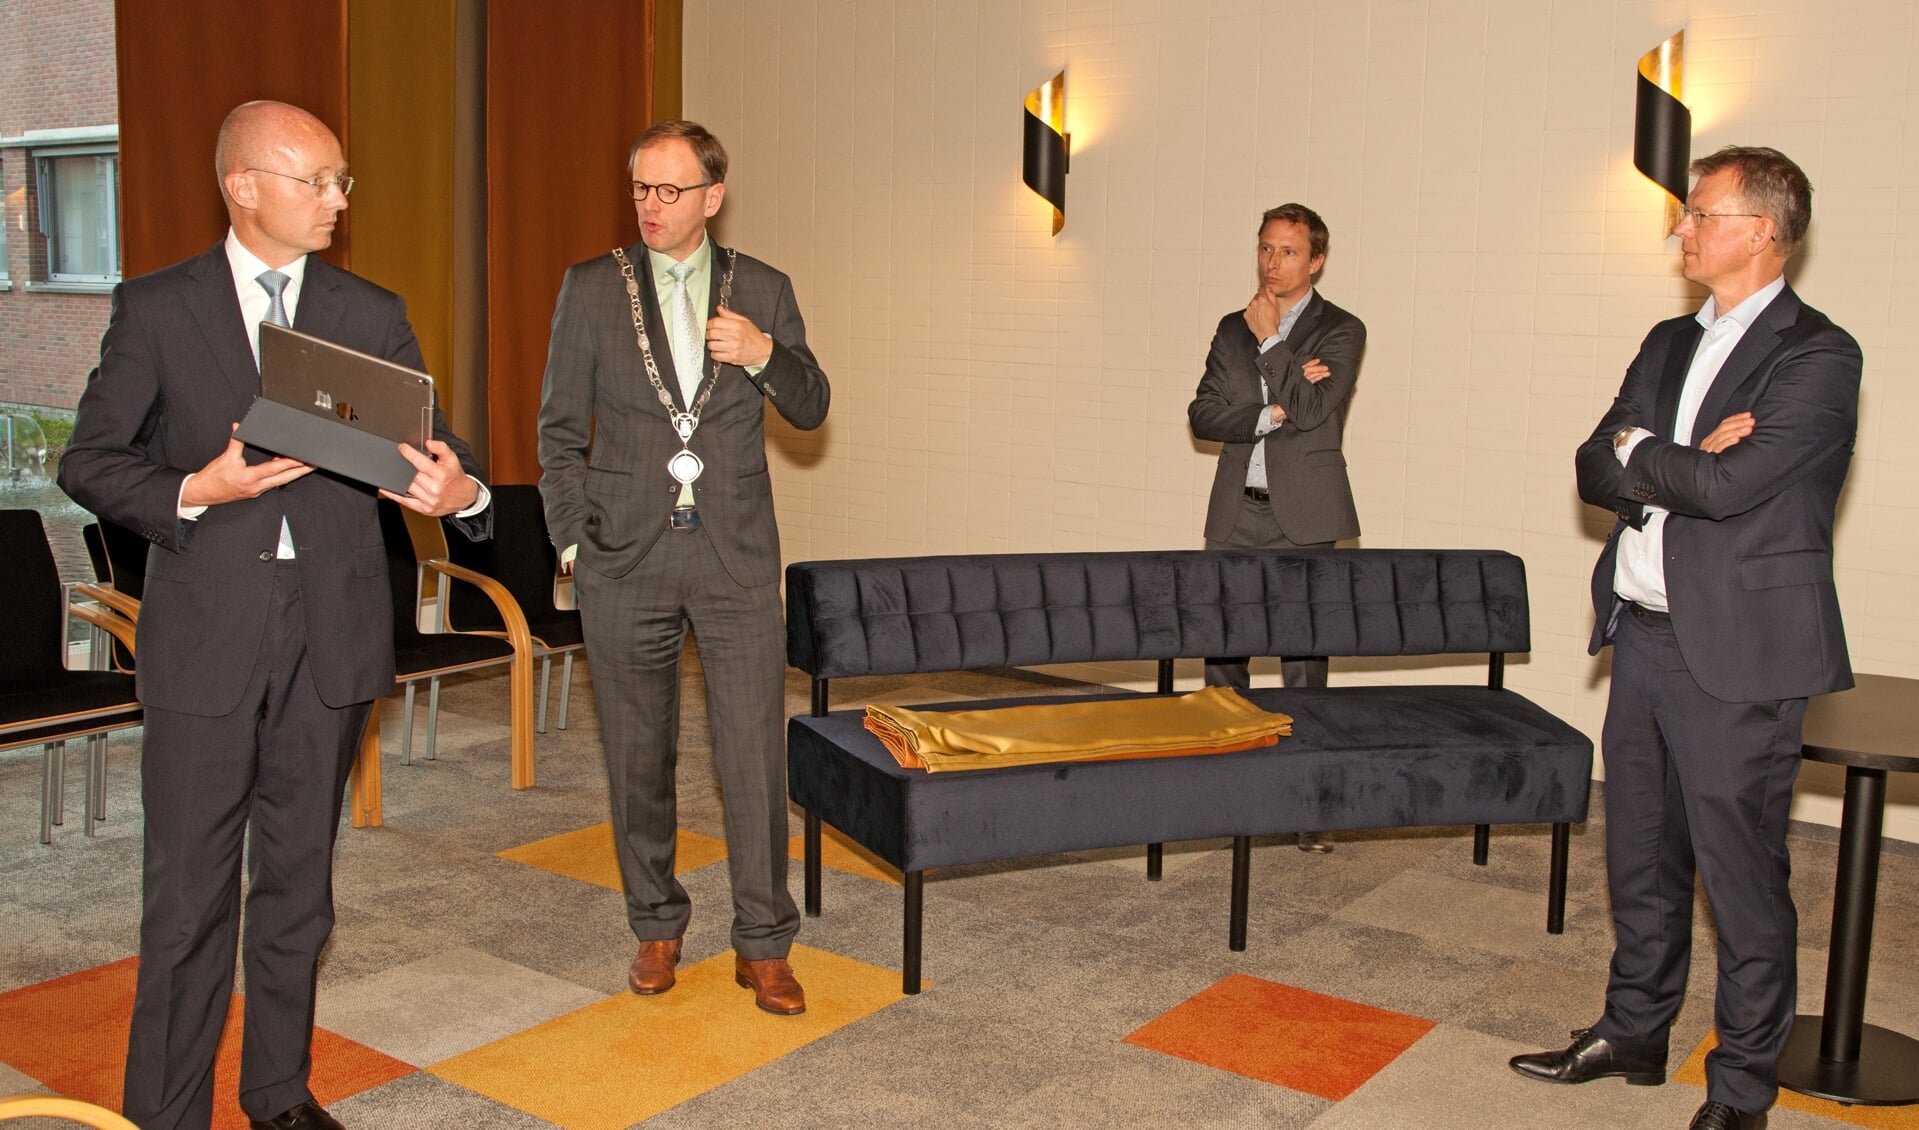 Raadsgriffier Hans Rijs geeft uitleg over het digitale vergadersysteem aan de heren Bagchus (rechts) en Steur.